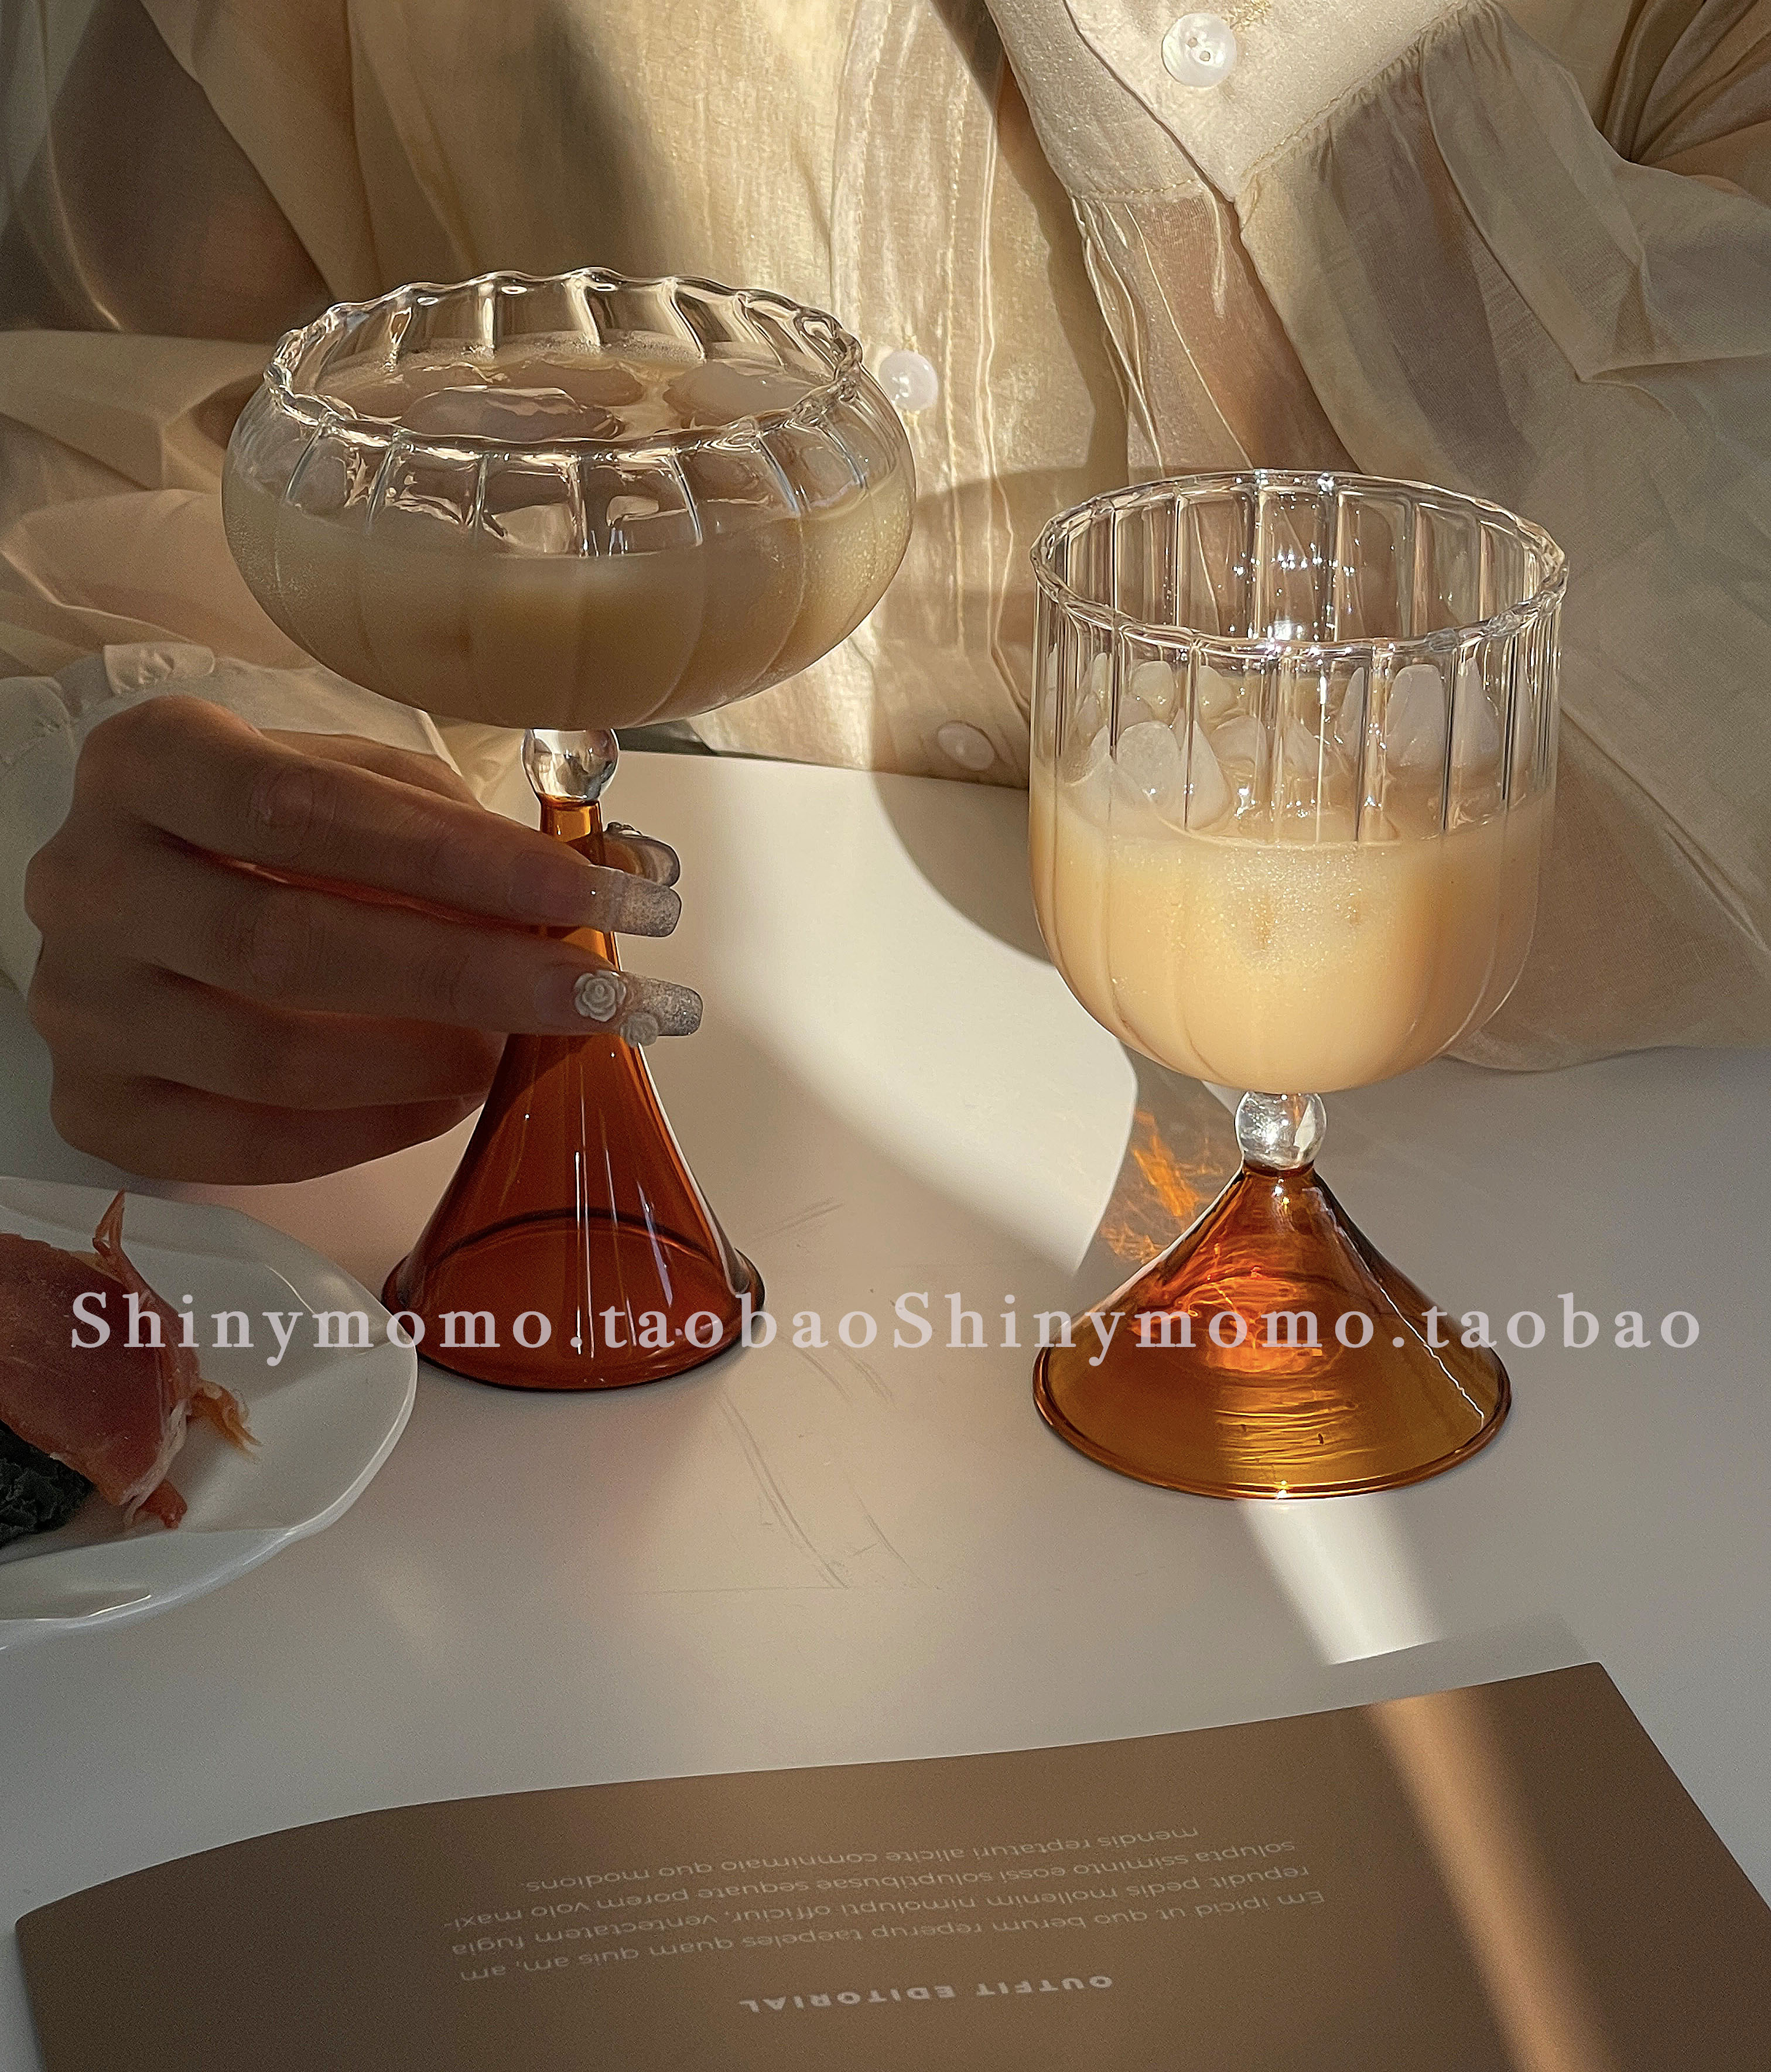 爱打扮(www.idaban.cn)，Shinymomo创意ins韩风夏季酒杯彩色玻璃果汁冰激凌杯复古可爱水杯